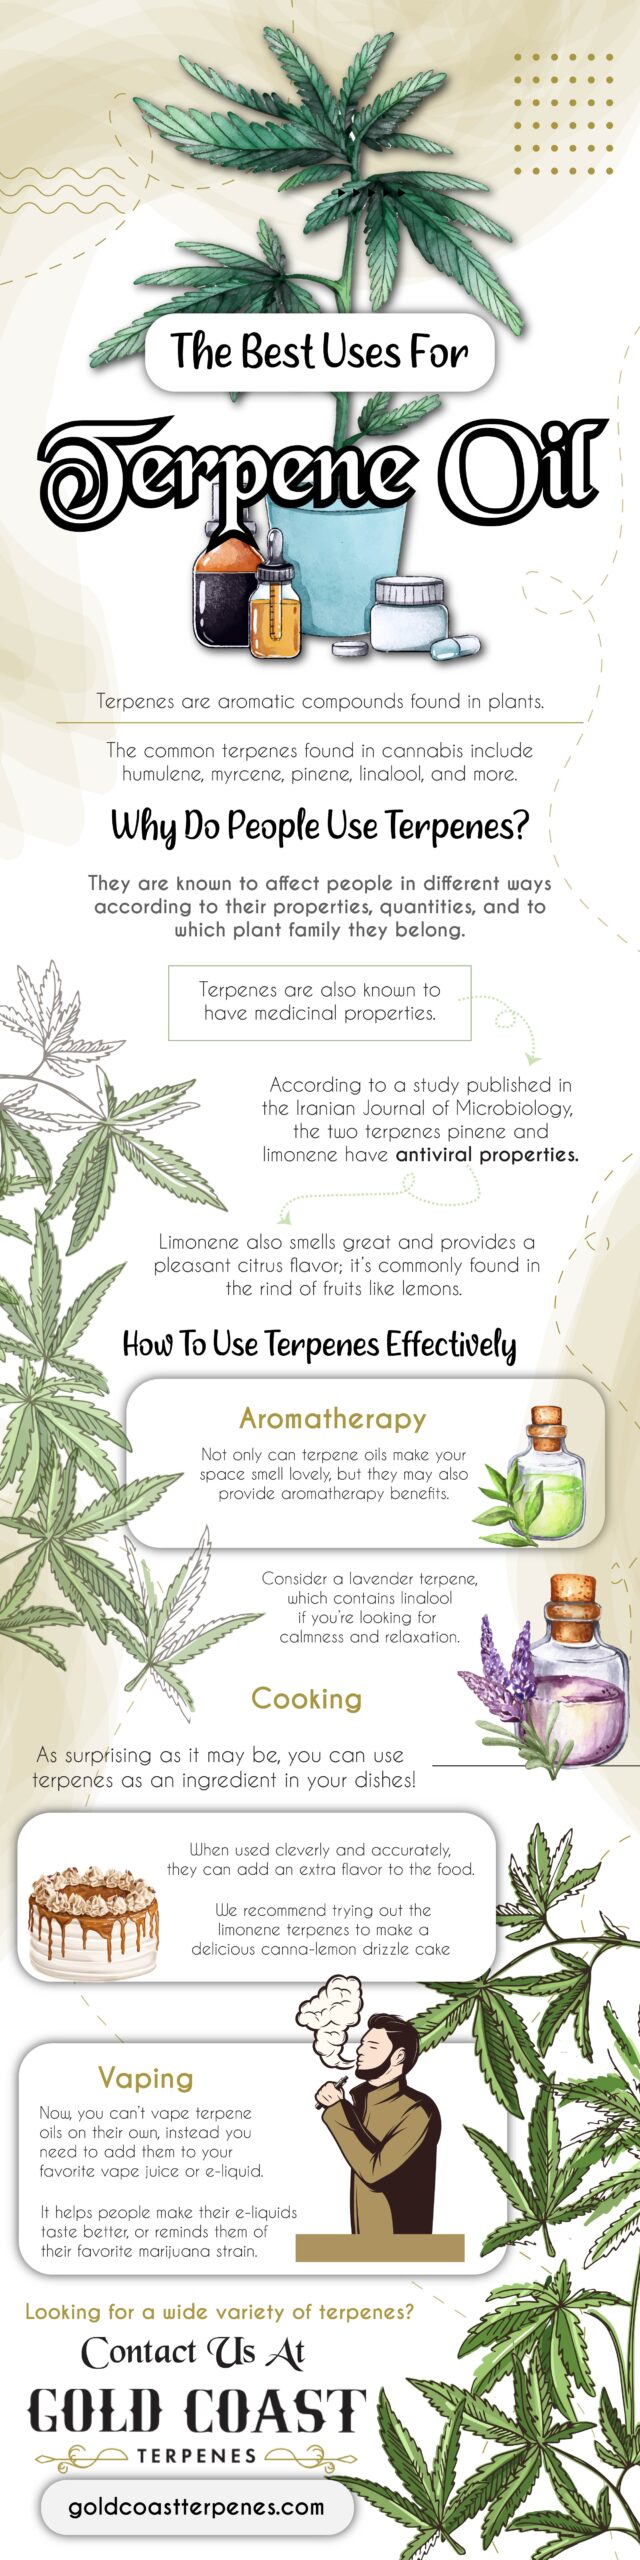 The Best Uses For Terpene Oil